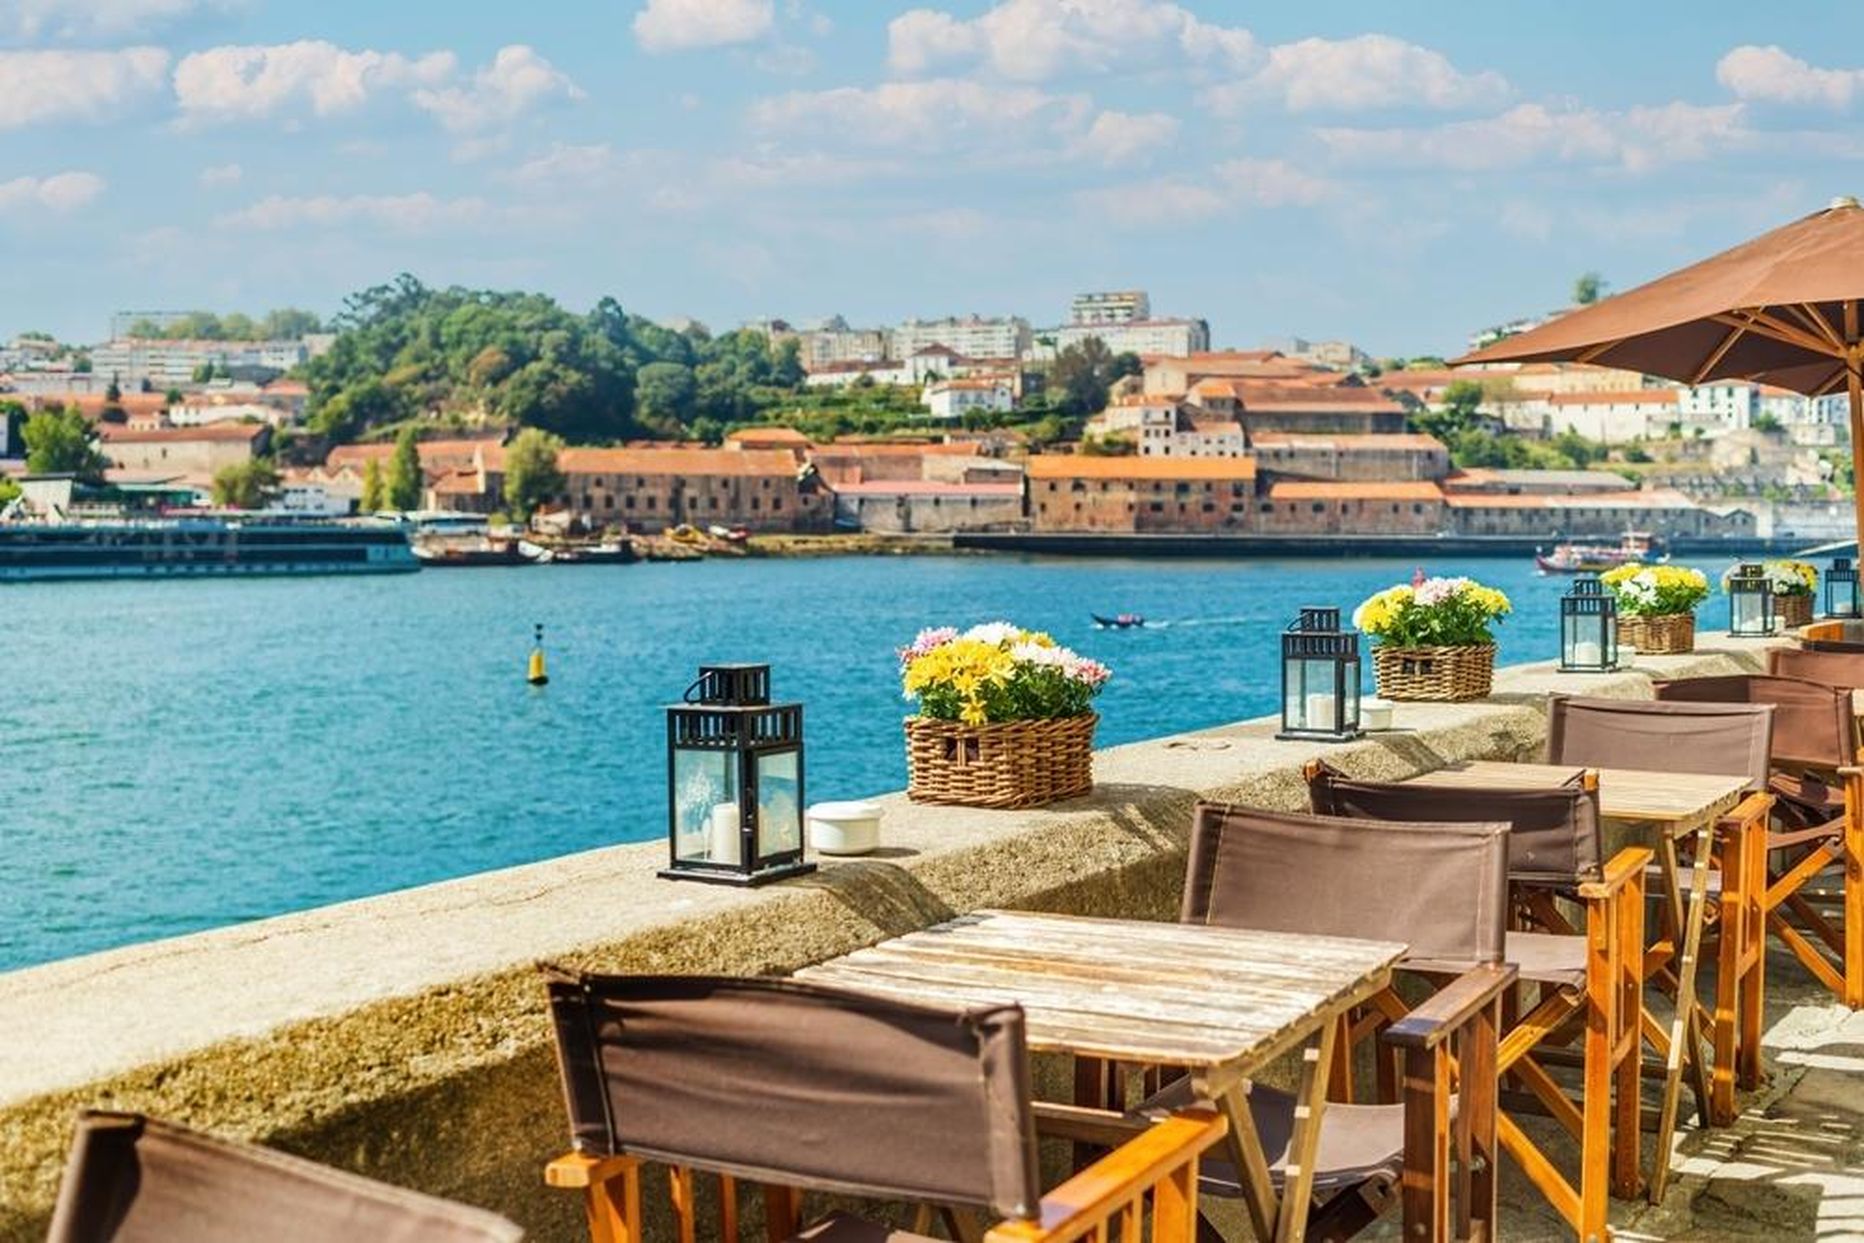 Portos on jõeäär toredasti vinoteeke ja kohvikuid täis, kõik omanäolised ja ägedad.